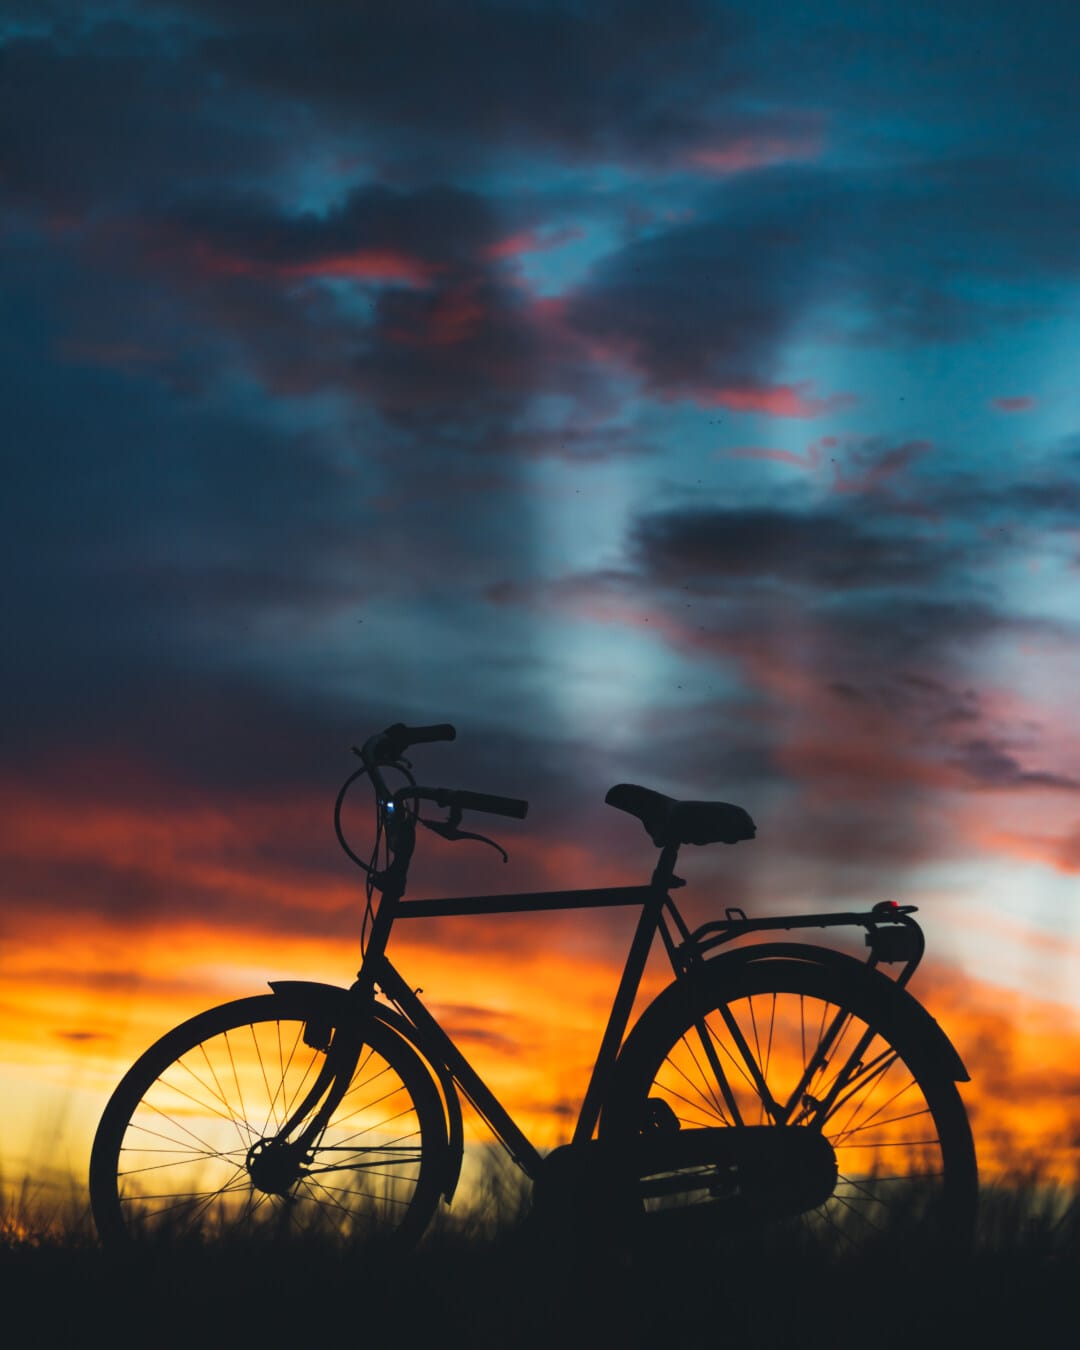 silueta, biciclete, iluminare din spate, maiestuos, atmosfera, amurg, seara, idilic, apus de soare, amurg